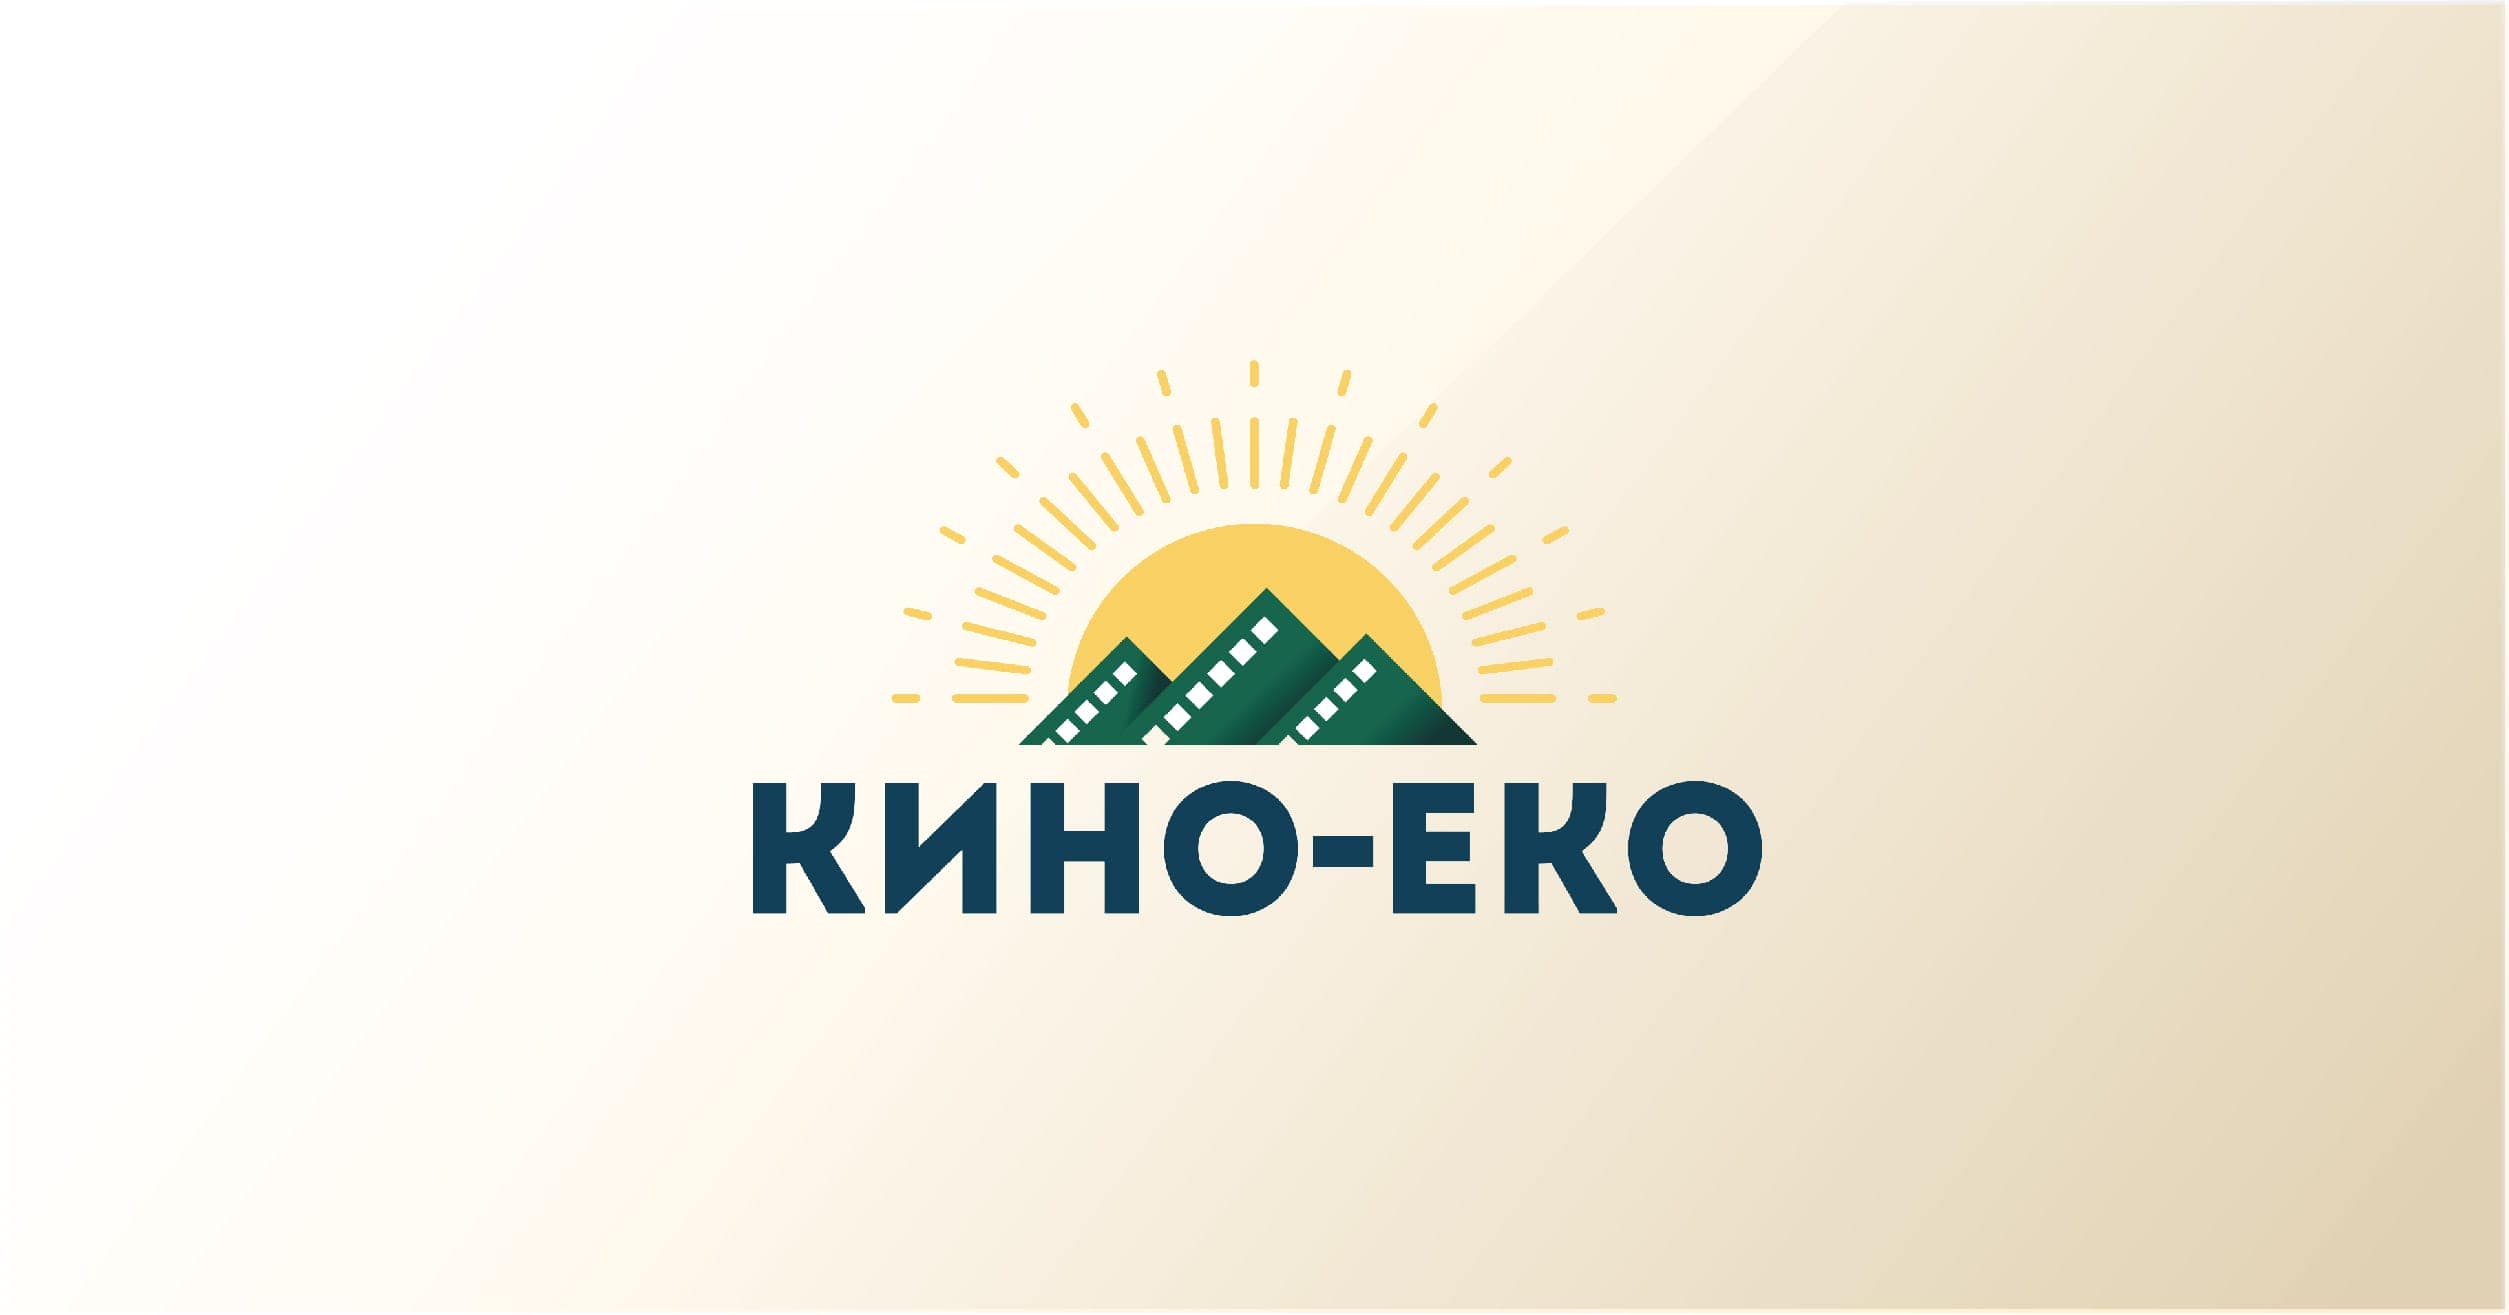 Kino-Eko